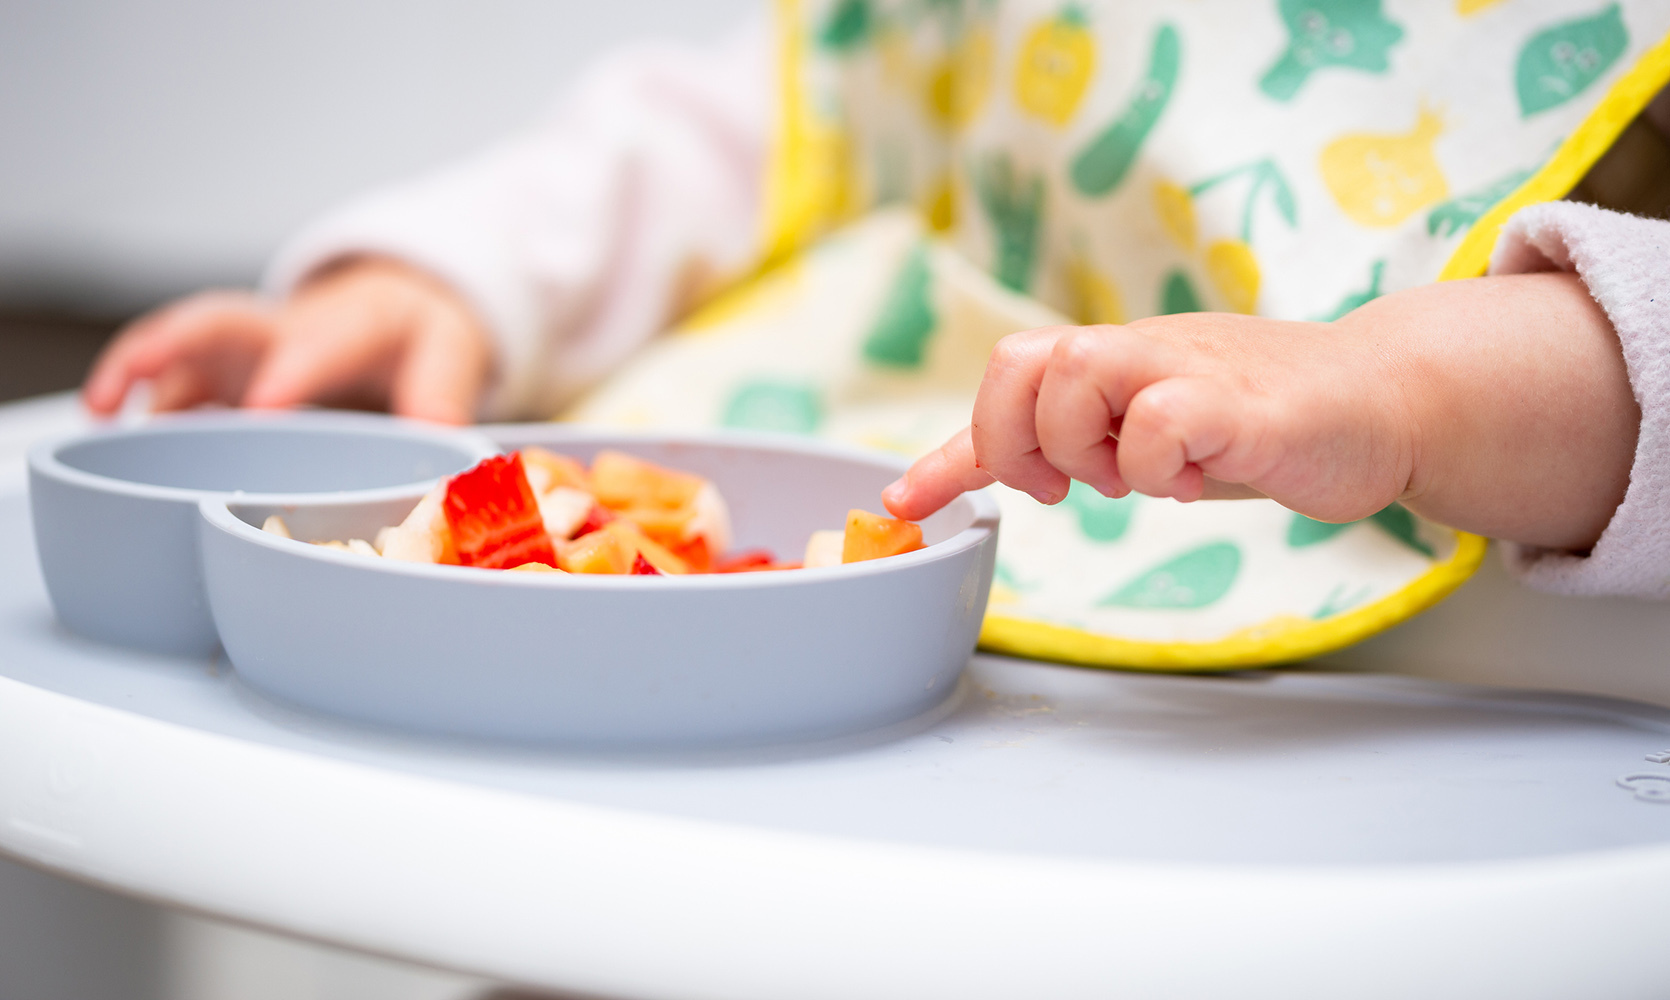 Co zrobić, jeśli pojawią się zaburzenia odżywiania u dziecka?